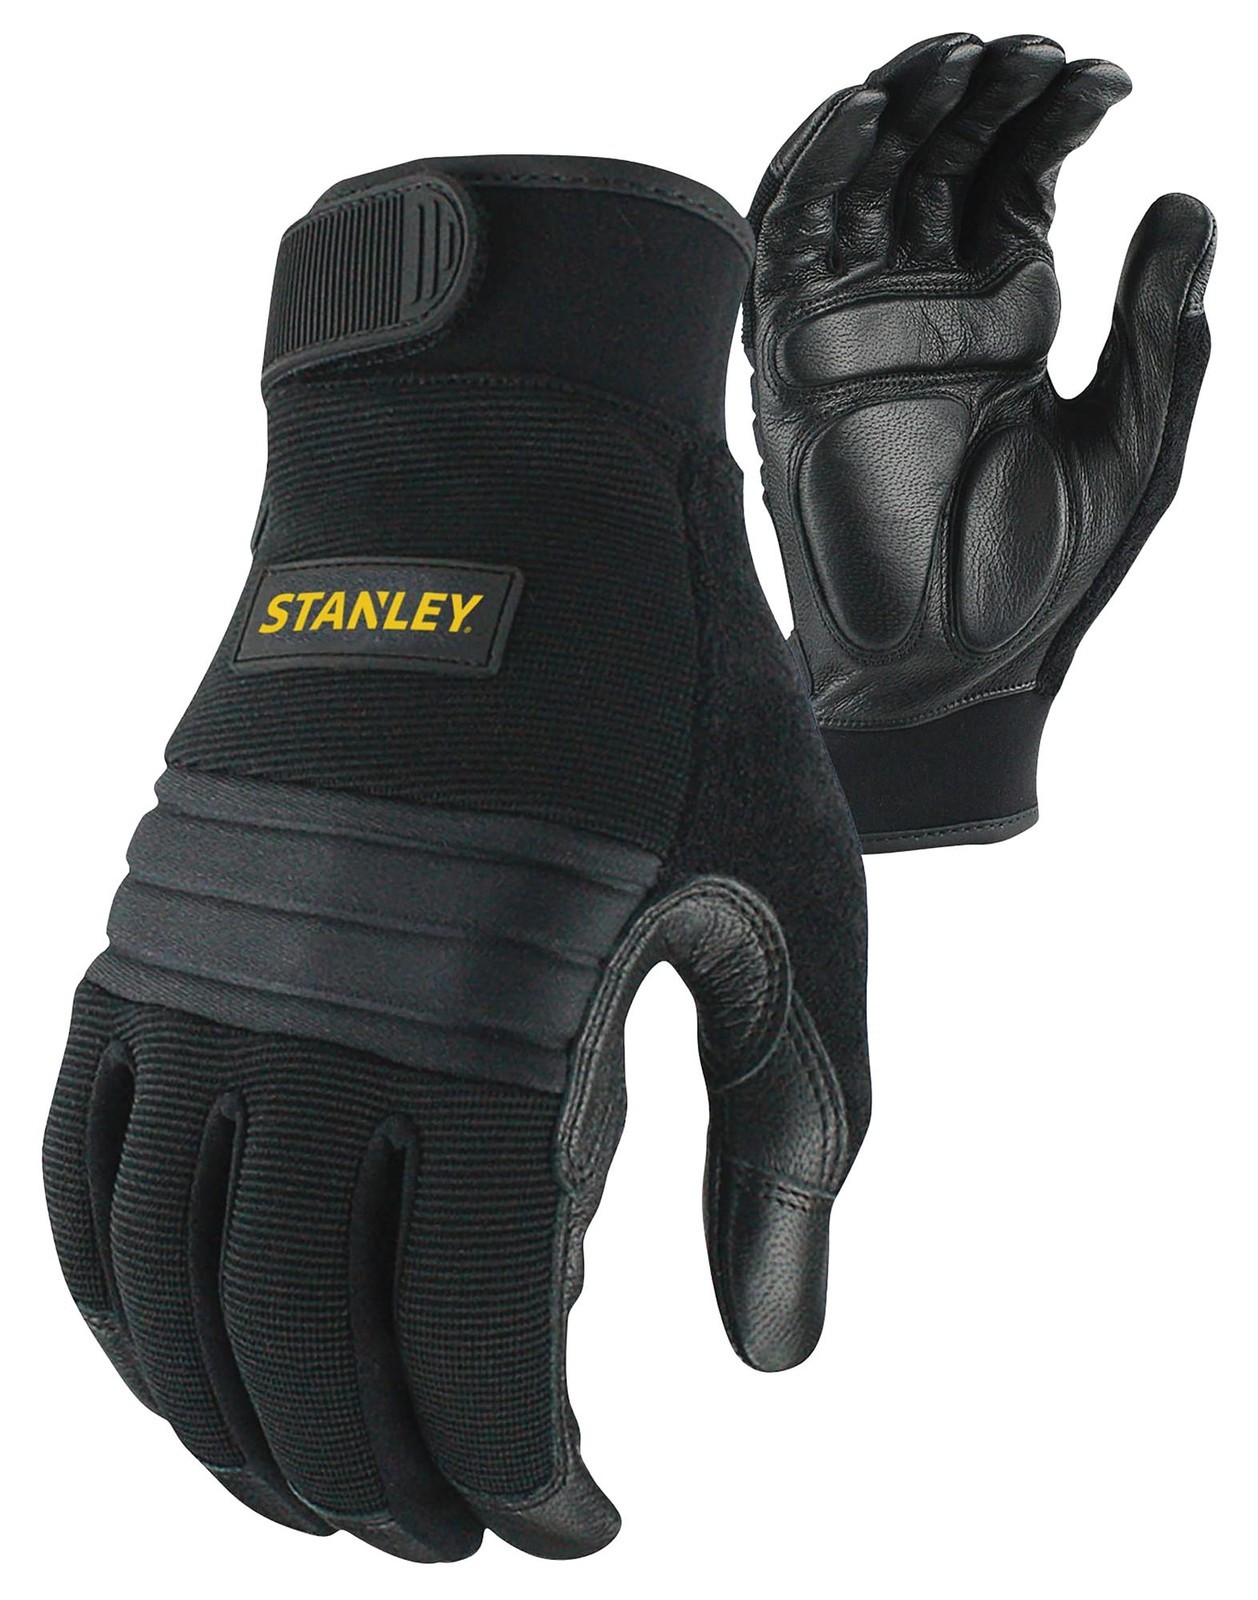 Stanley Sy800L Eu - L Anti-Vibration Gloves - L